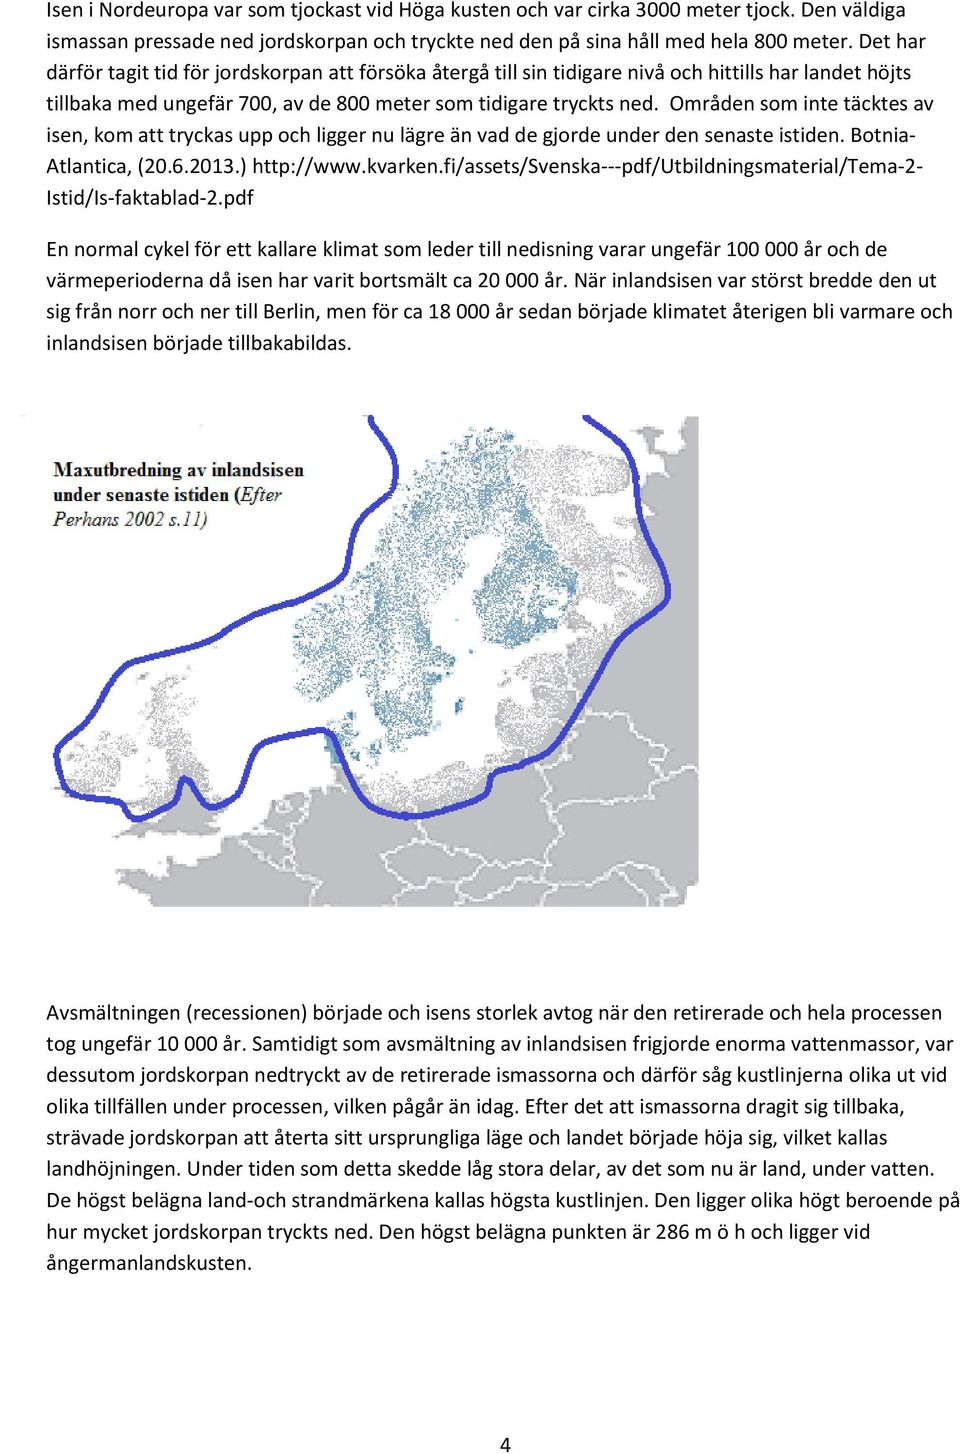 Områden som inte täcktes av isen, kom att tryckas upp och ligger nu lägre än vad de gjorde under den senaste istiden. Botnia- Atlantica, (20.6.2013.) http://www.kvarken.